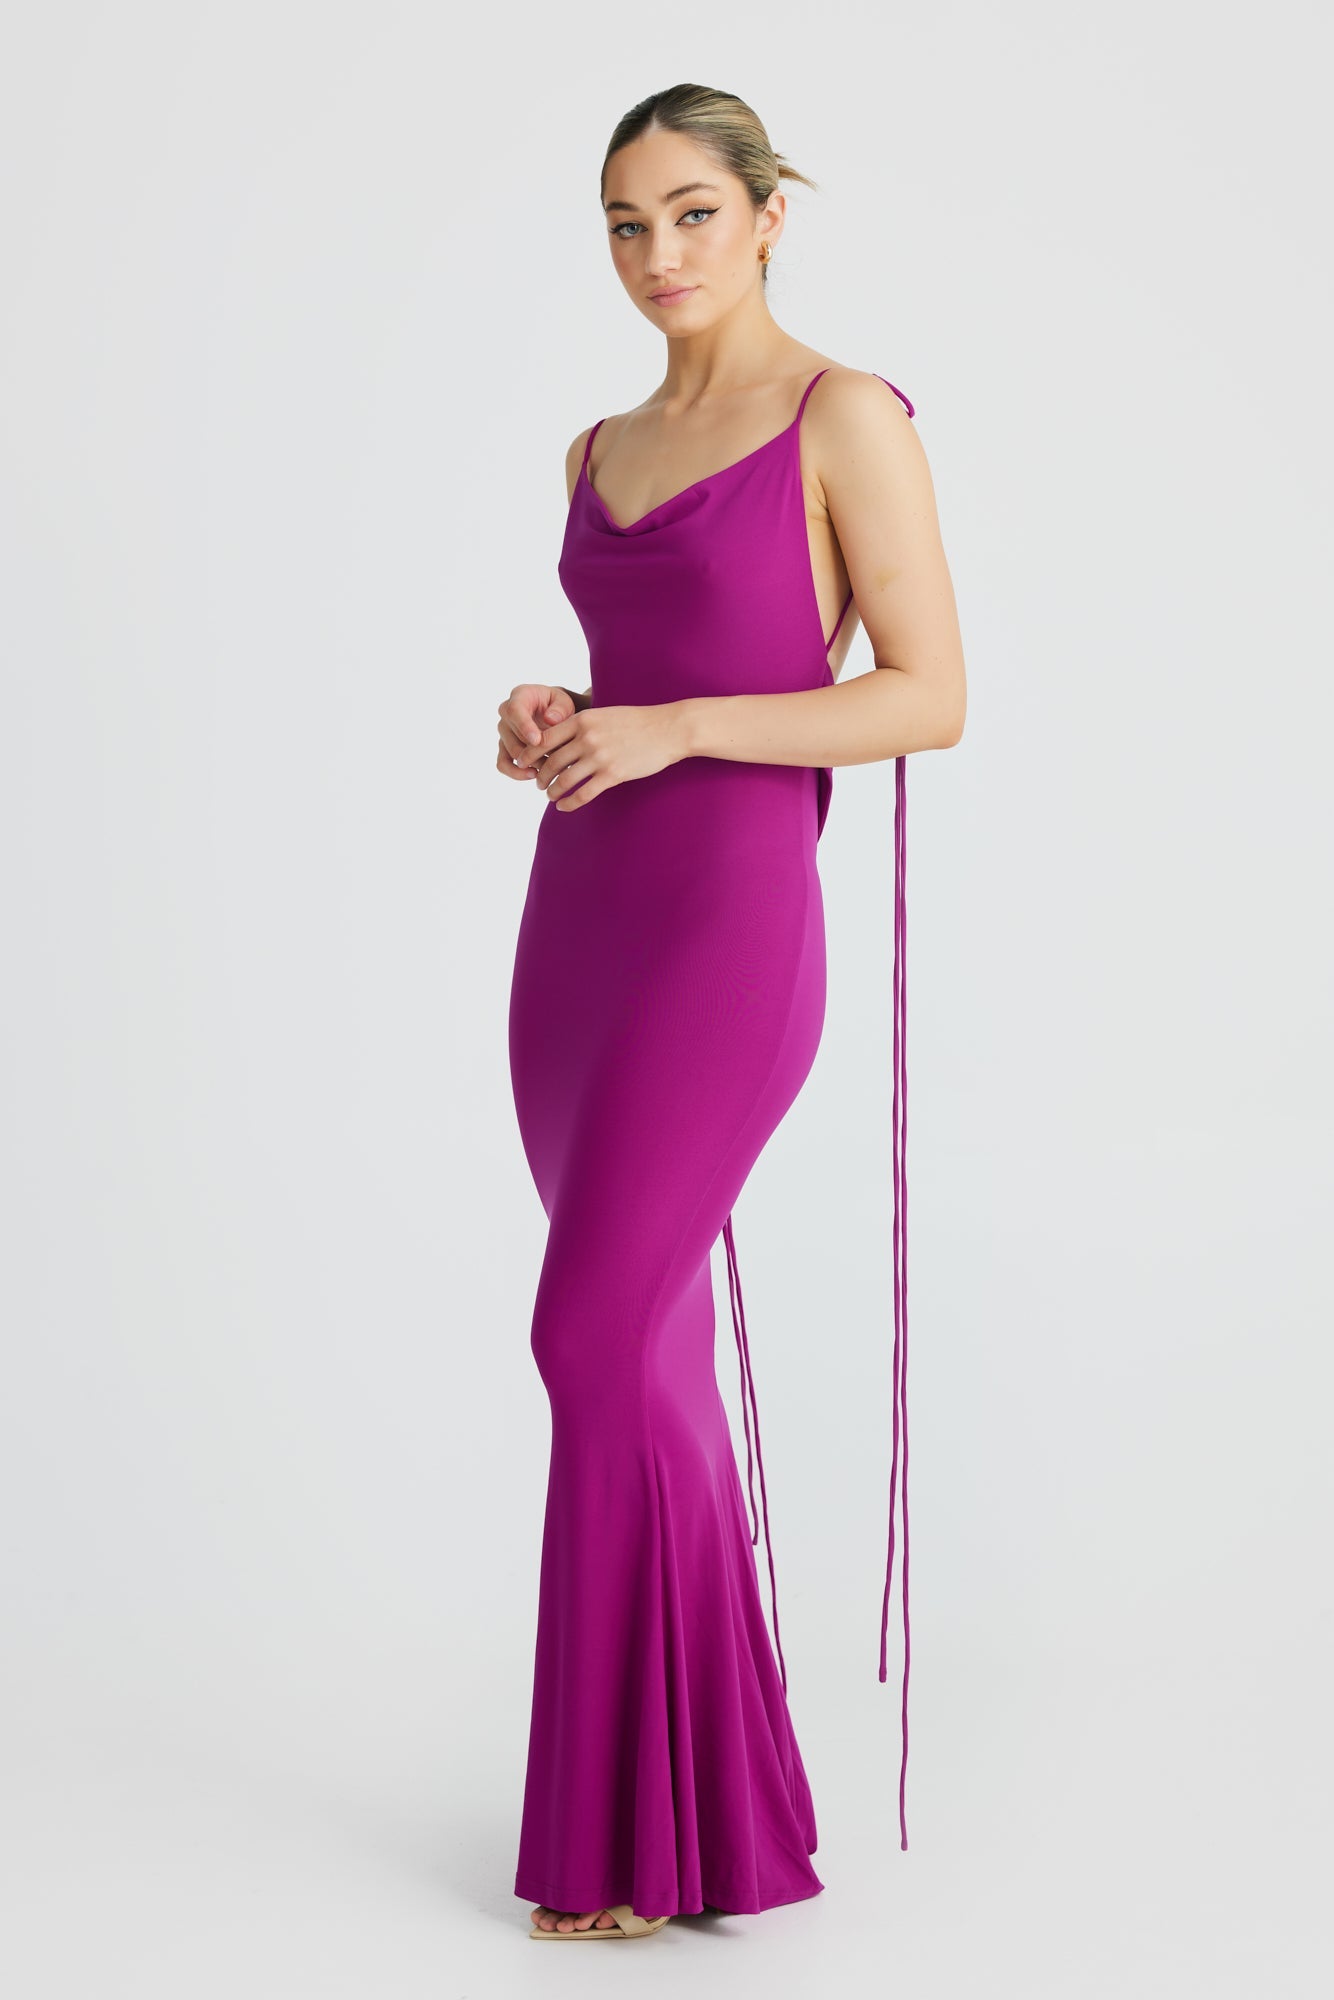 MÉLANI The Label CRISTINA Purple Drape Low Back Dress